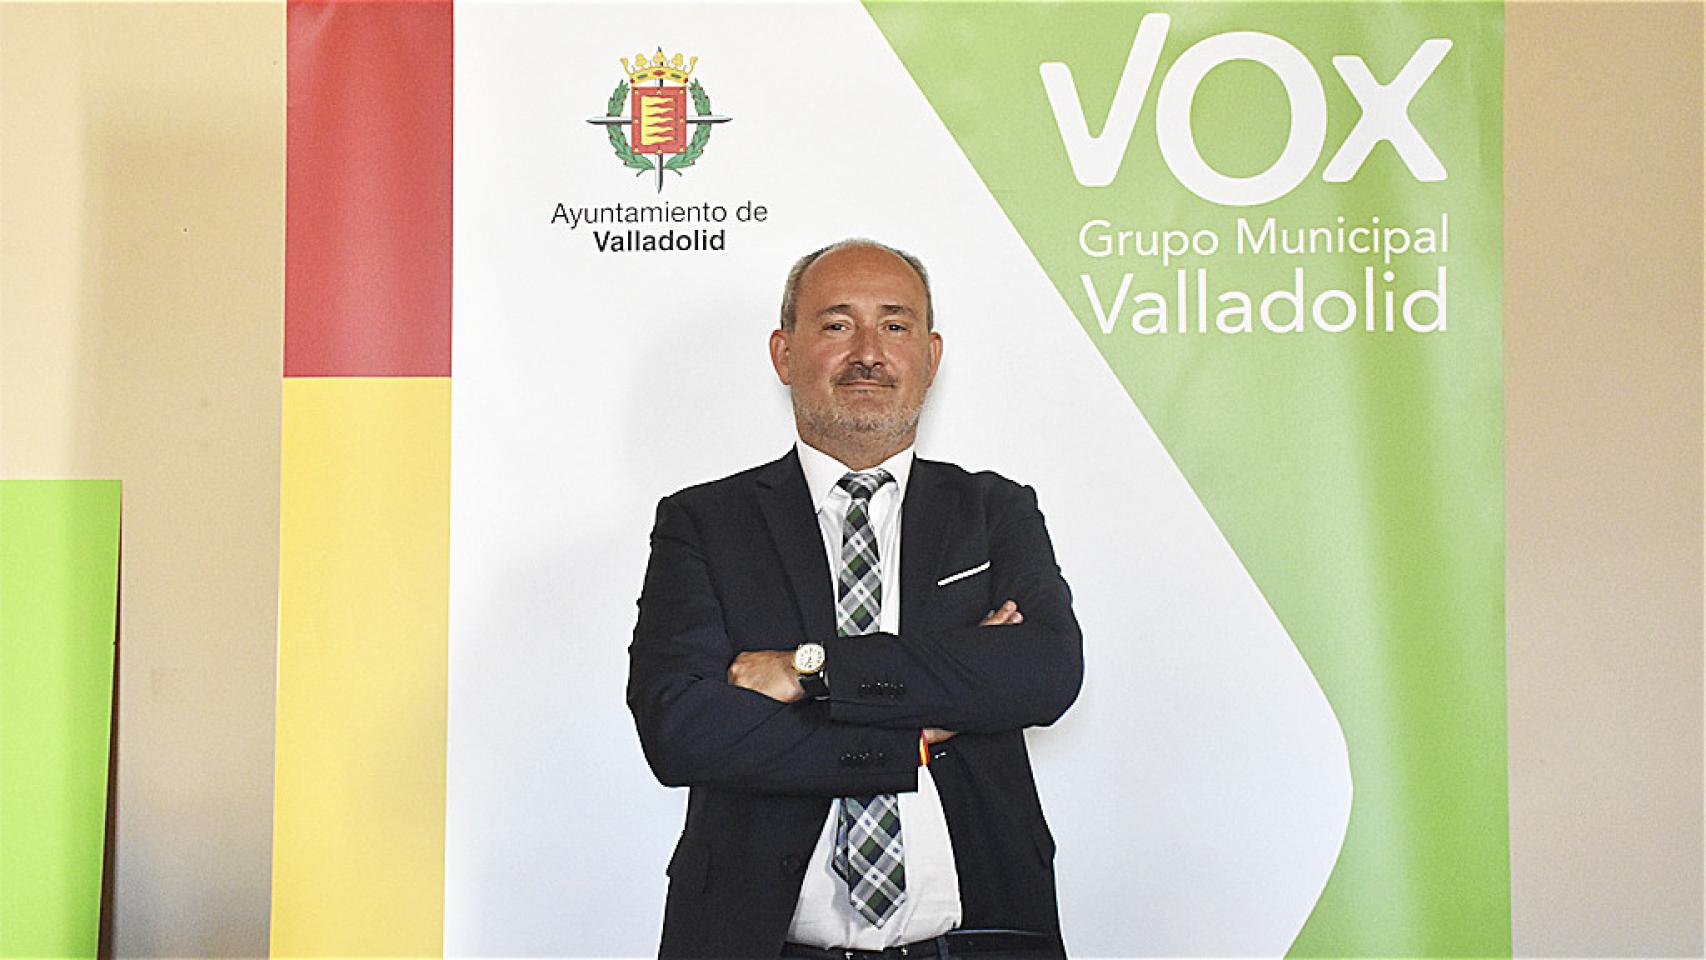 Alberto Cuadrado, concejal de Salud Pública y Seguridad Ciudadana en el Ayuntamiento de Valladolid con el cartel de su grupo de fondo